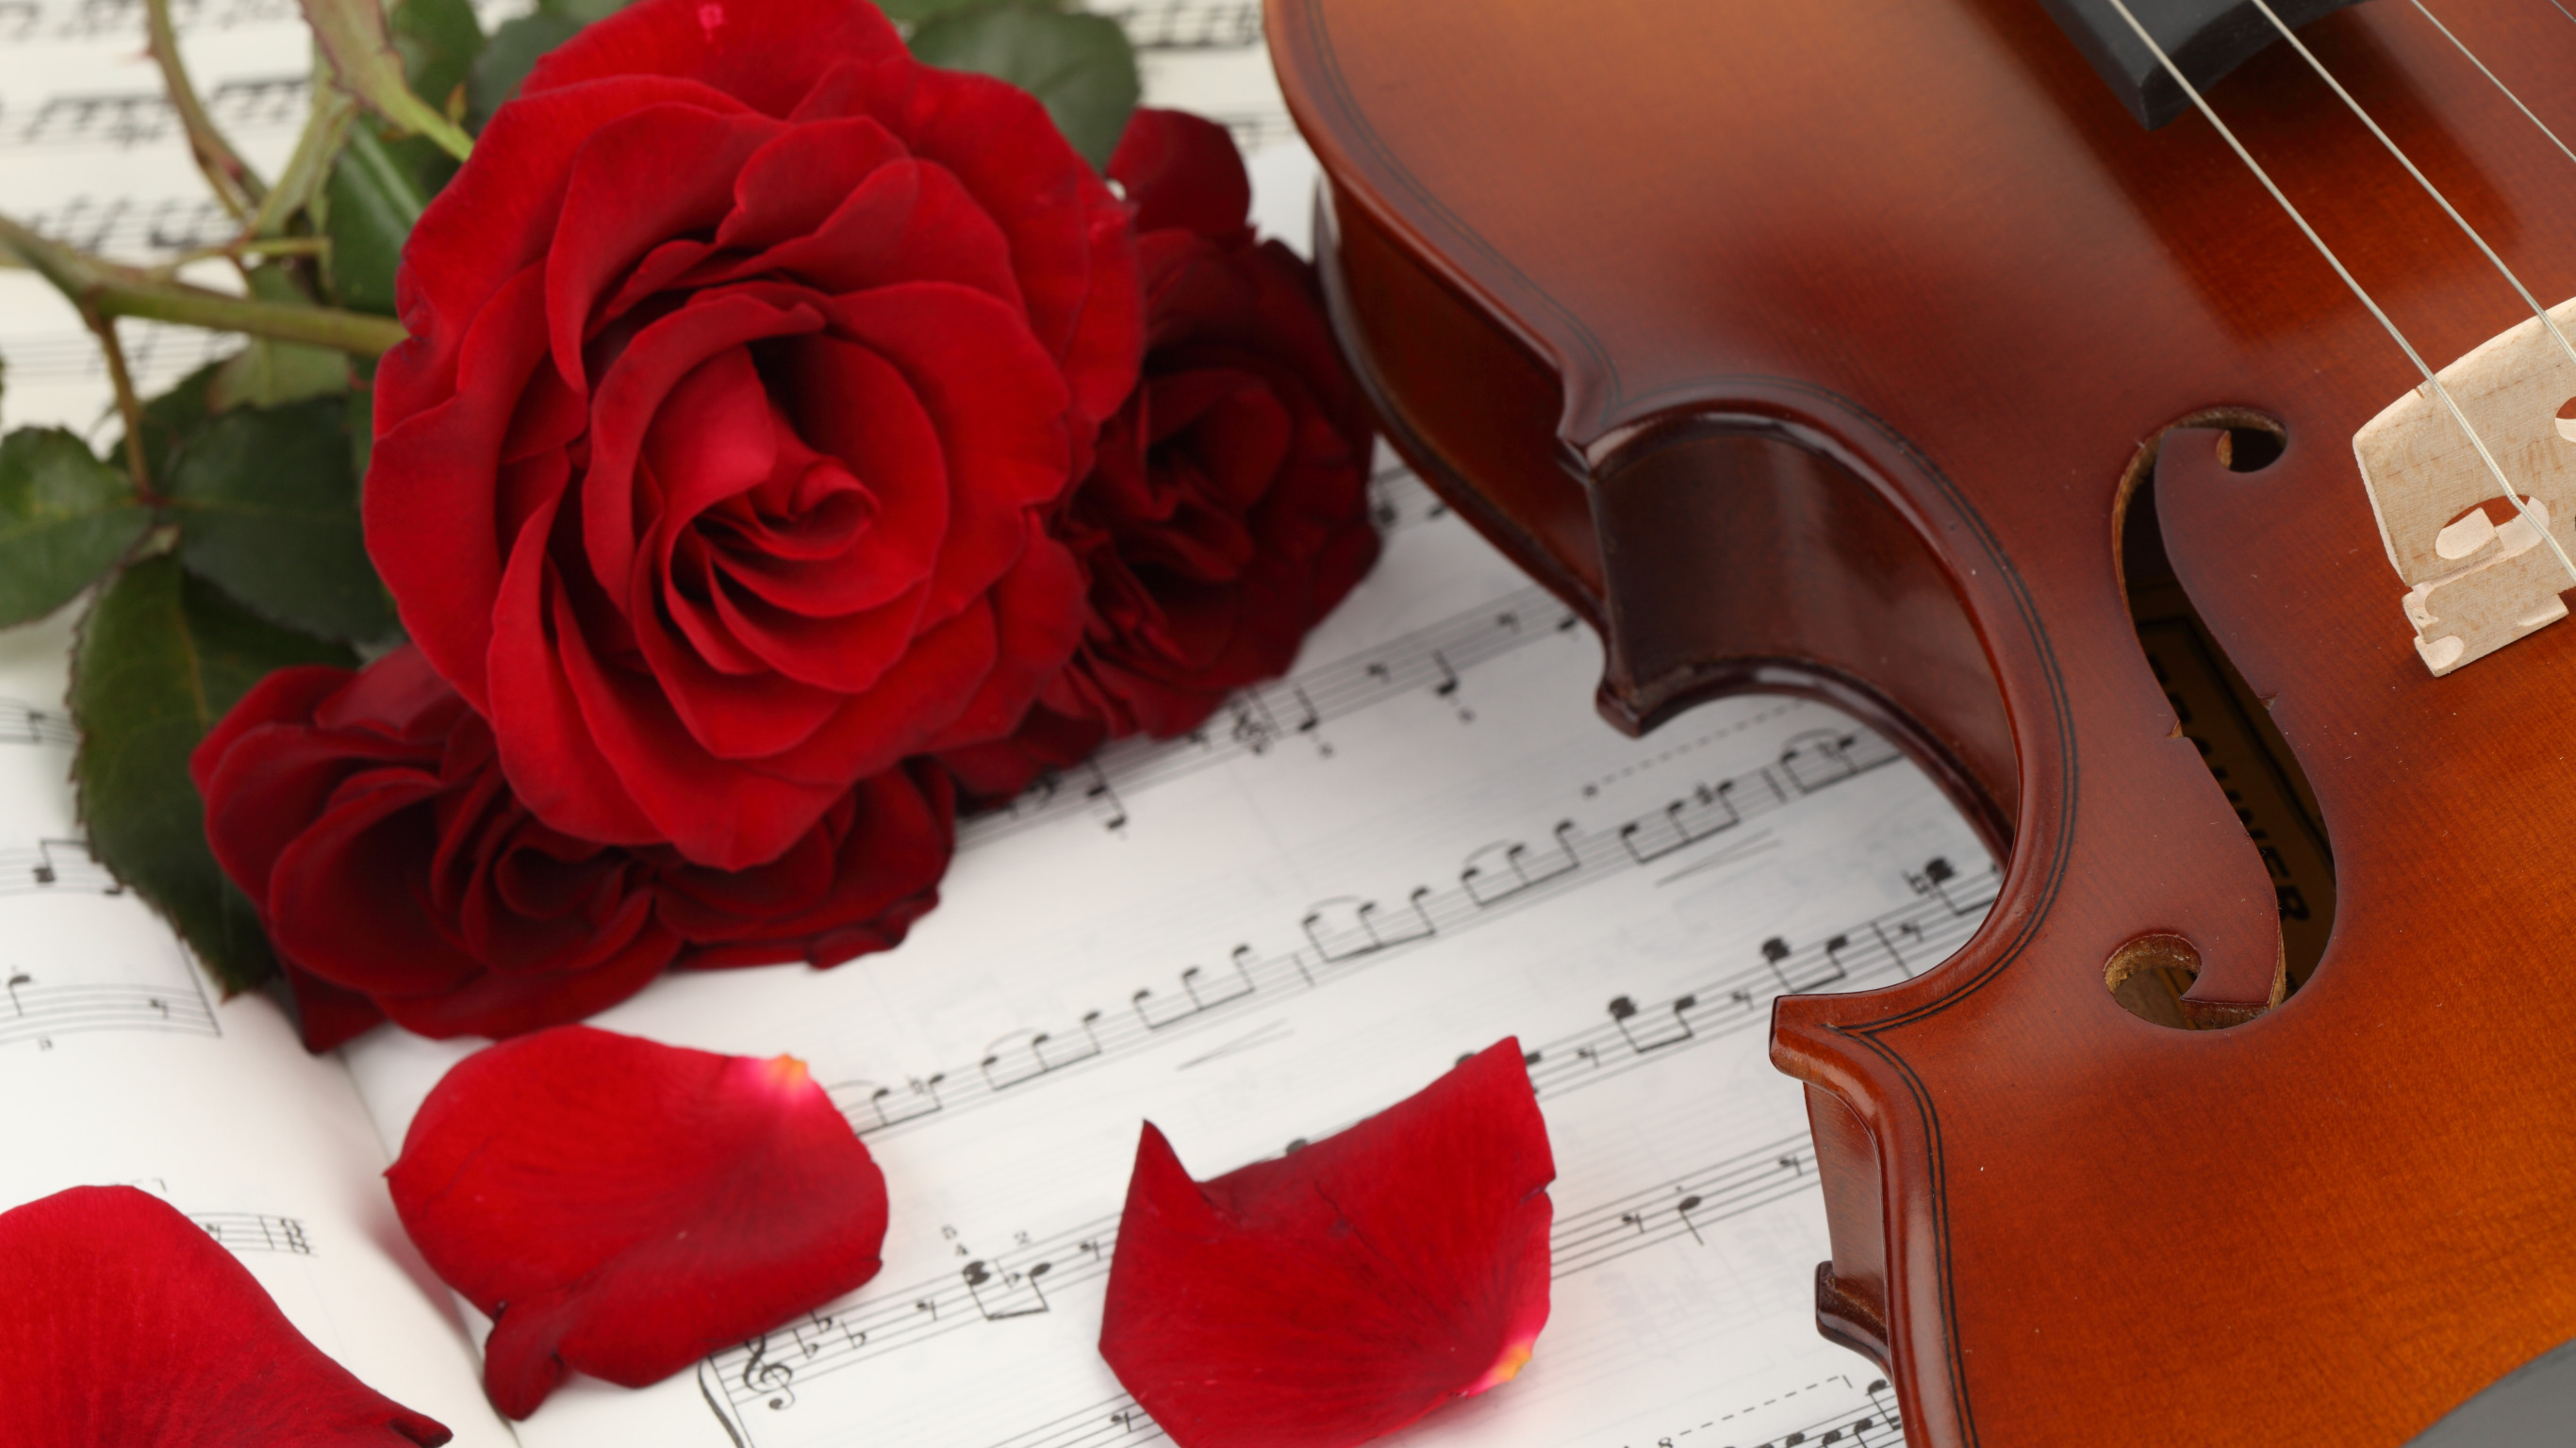 Нежная музыка скрипки. Музыкальные инструменты и цветы. Скрипка. Розы и музыкальные инструменты. Рояль с цветами.